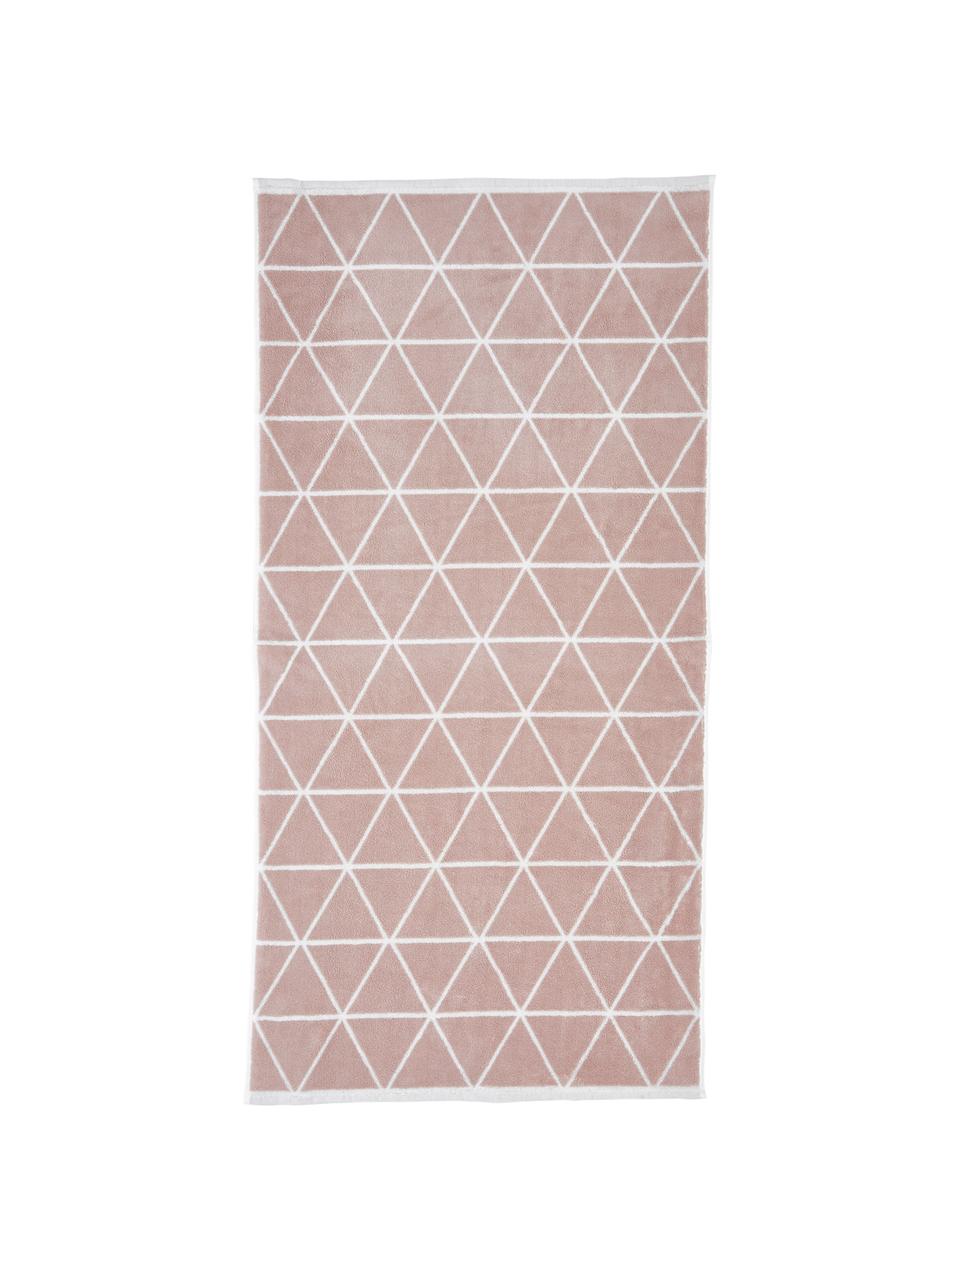 Wende-Handtuch-Set Elina mit grafischem Muster, 3-tlg., Rosa, Cremeweiß, Set mit verschiedenen Größen